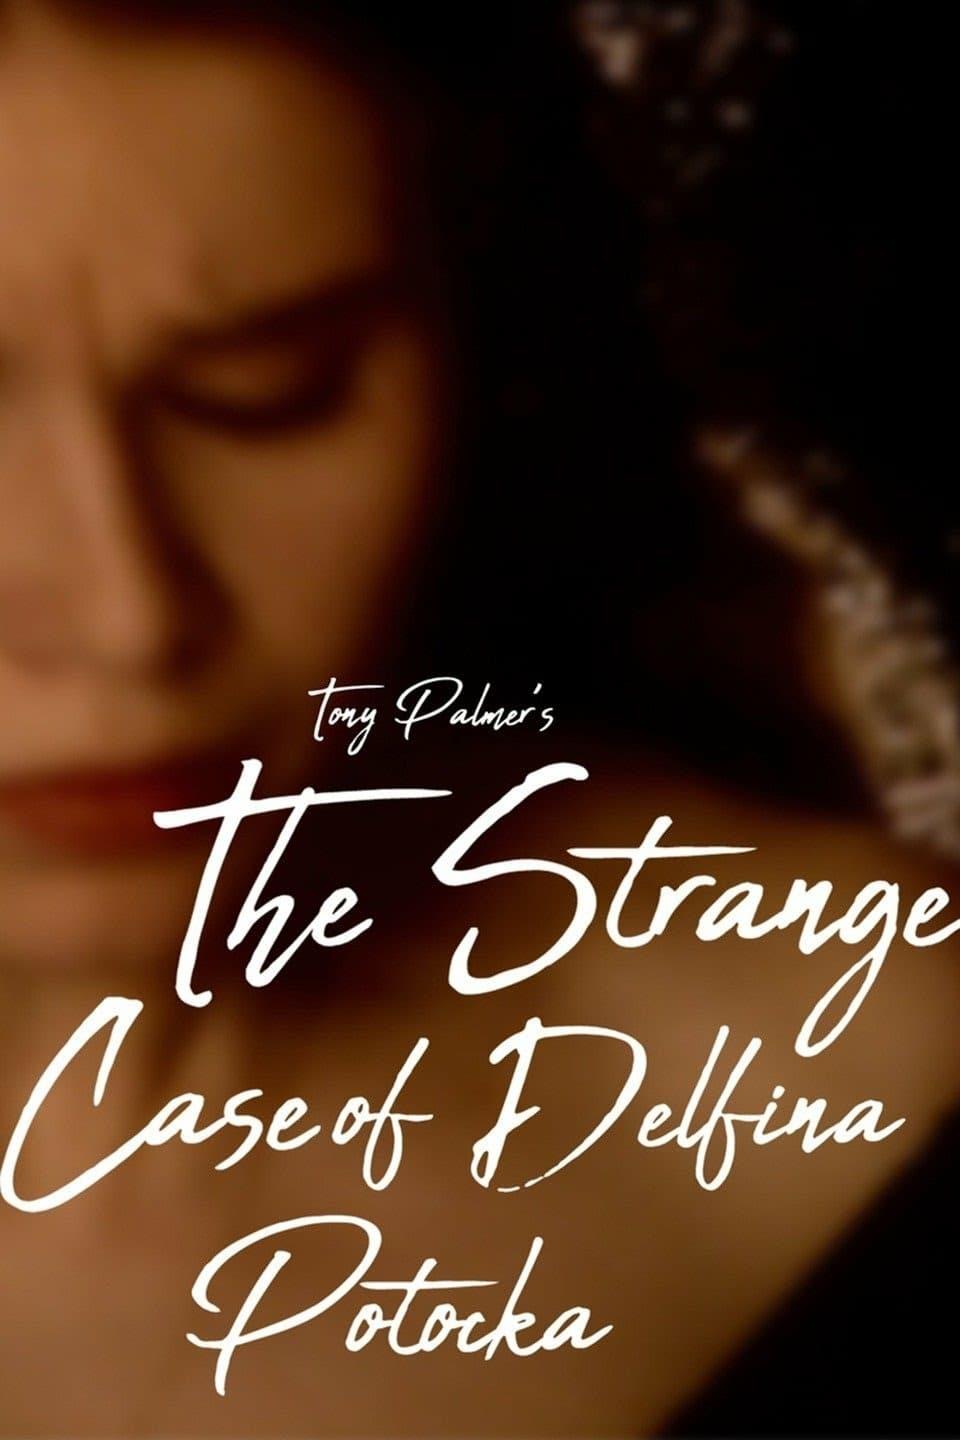 The Strange Case of Delfina Potocka poster